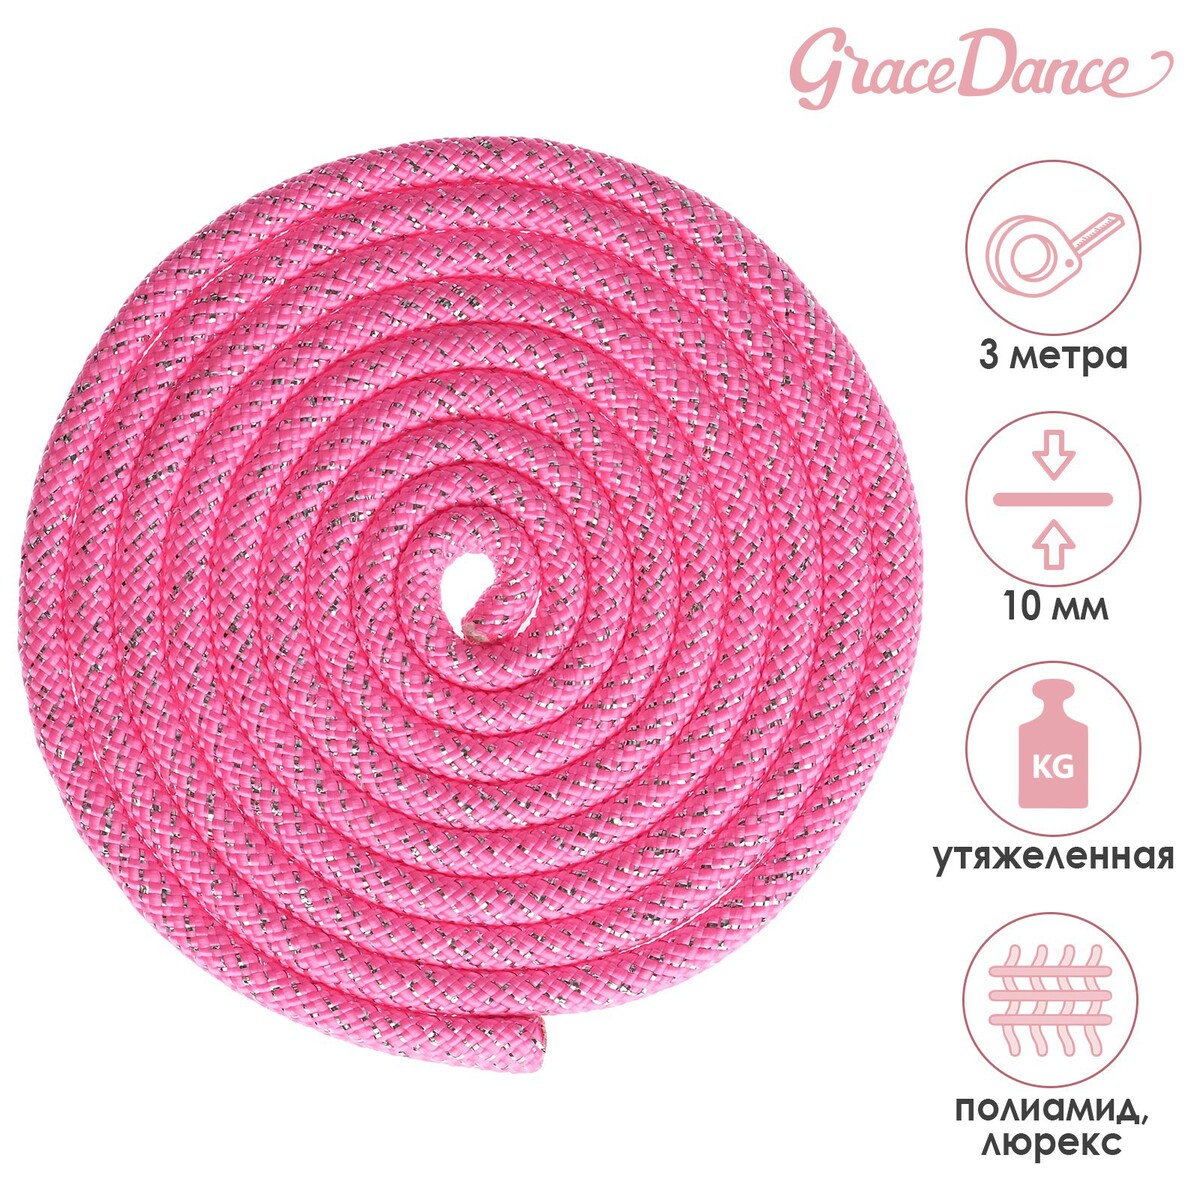 Скакалка гимнастическая утяжеленная grace dance, с люрексом, 3 м, 180 г, цвет неоновый розовый/серебристый